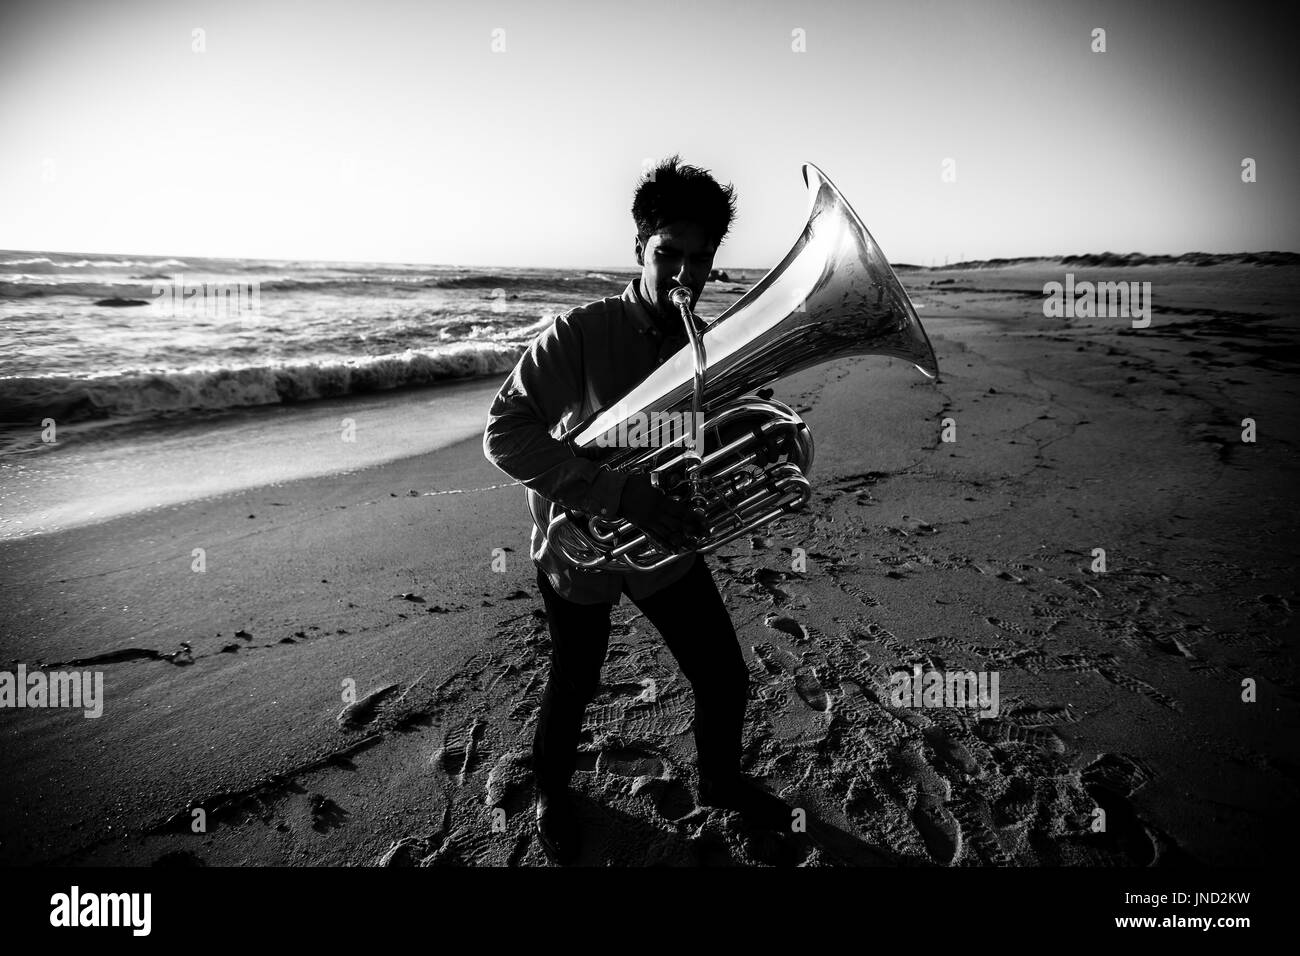 Musiker spielt die Tuba an der Meeresküste. Kontrastreiche schwarz-weiß-Fotografie. Stockfoto